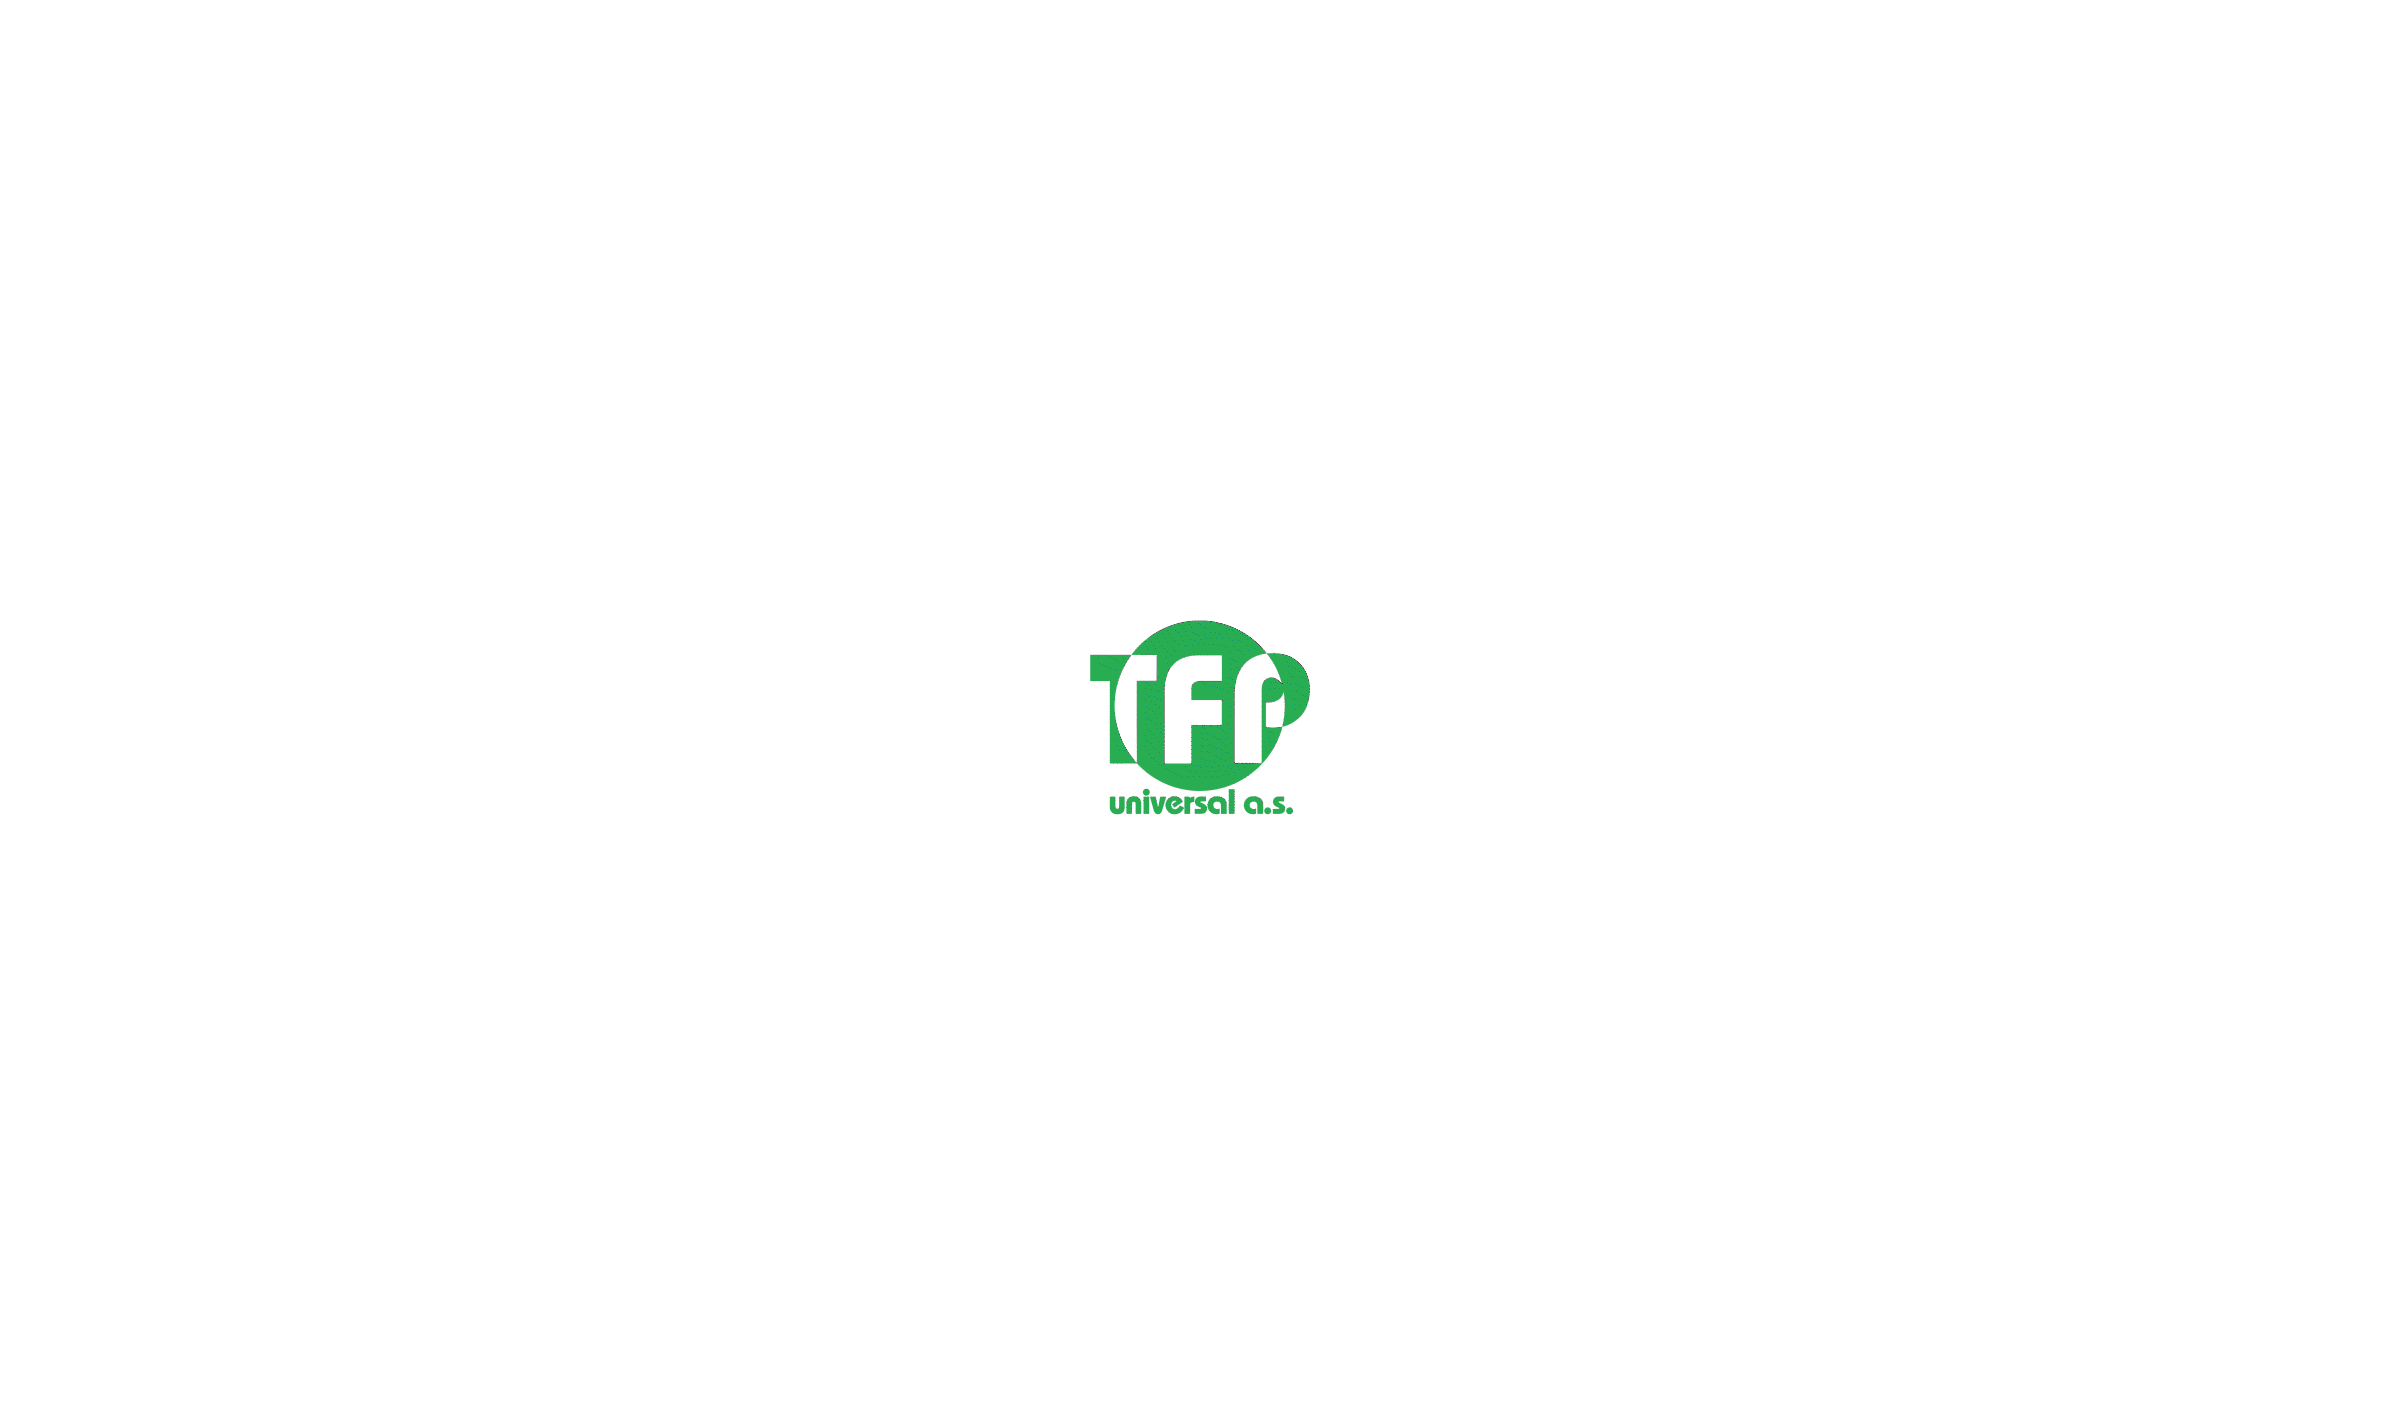 TFP branding